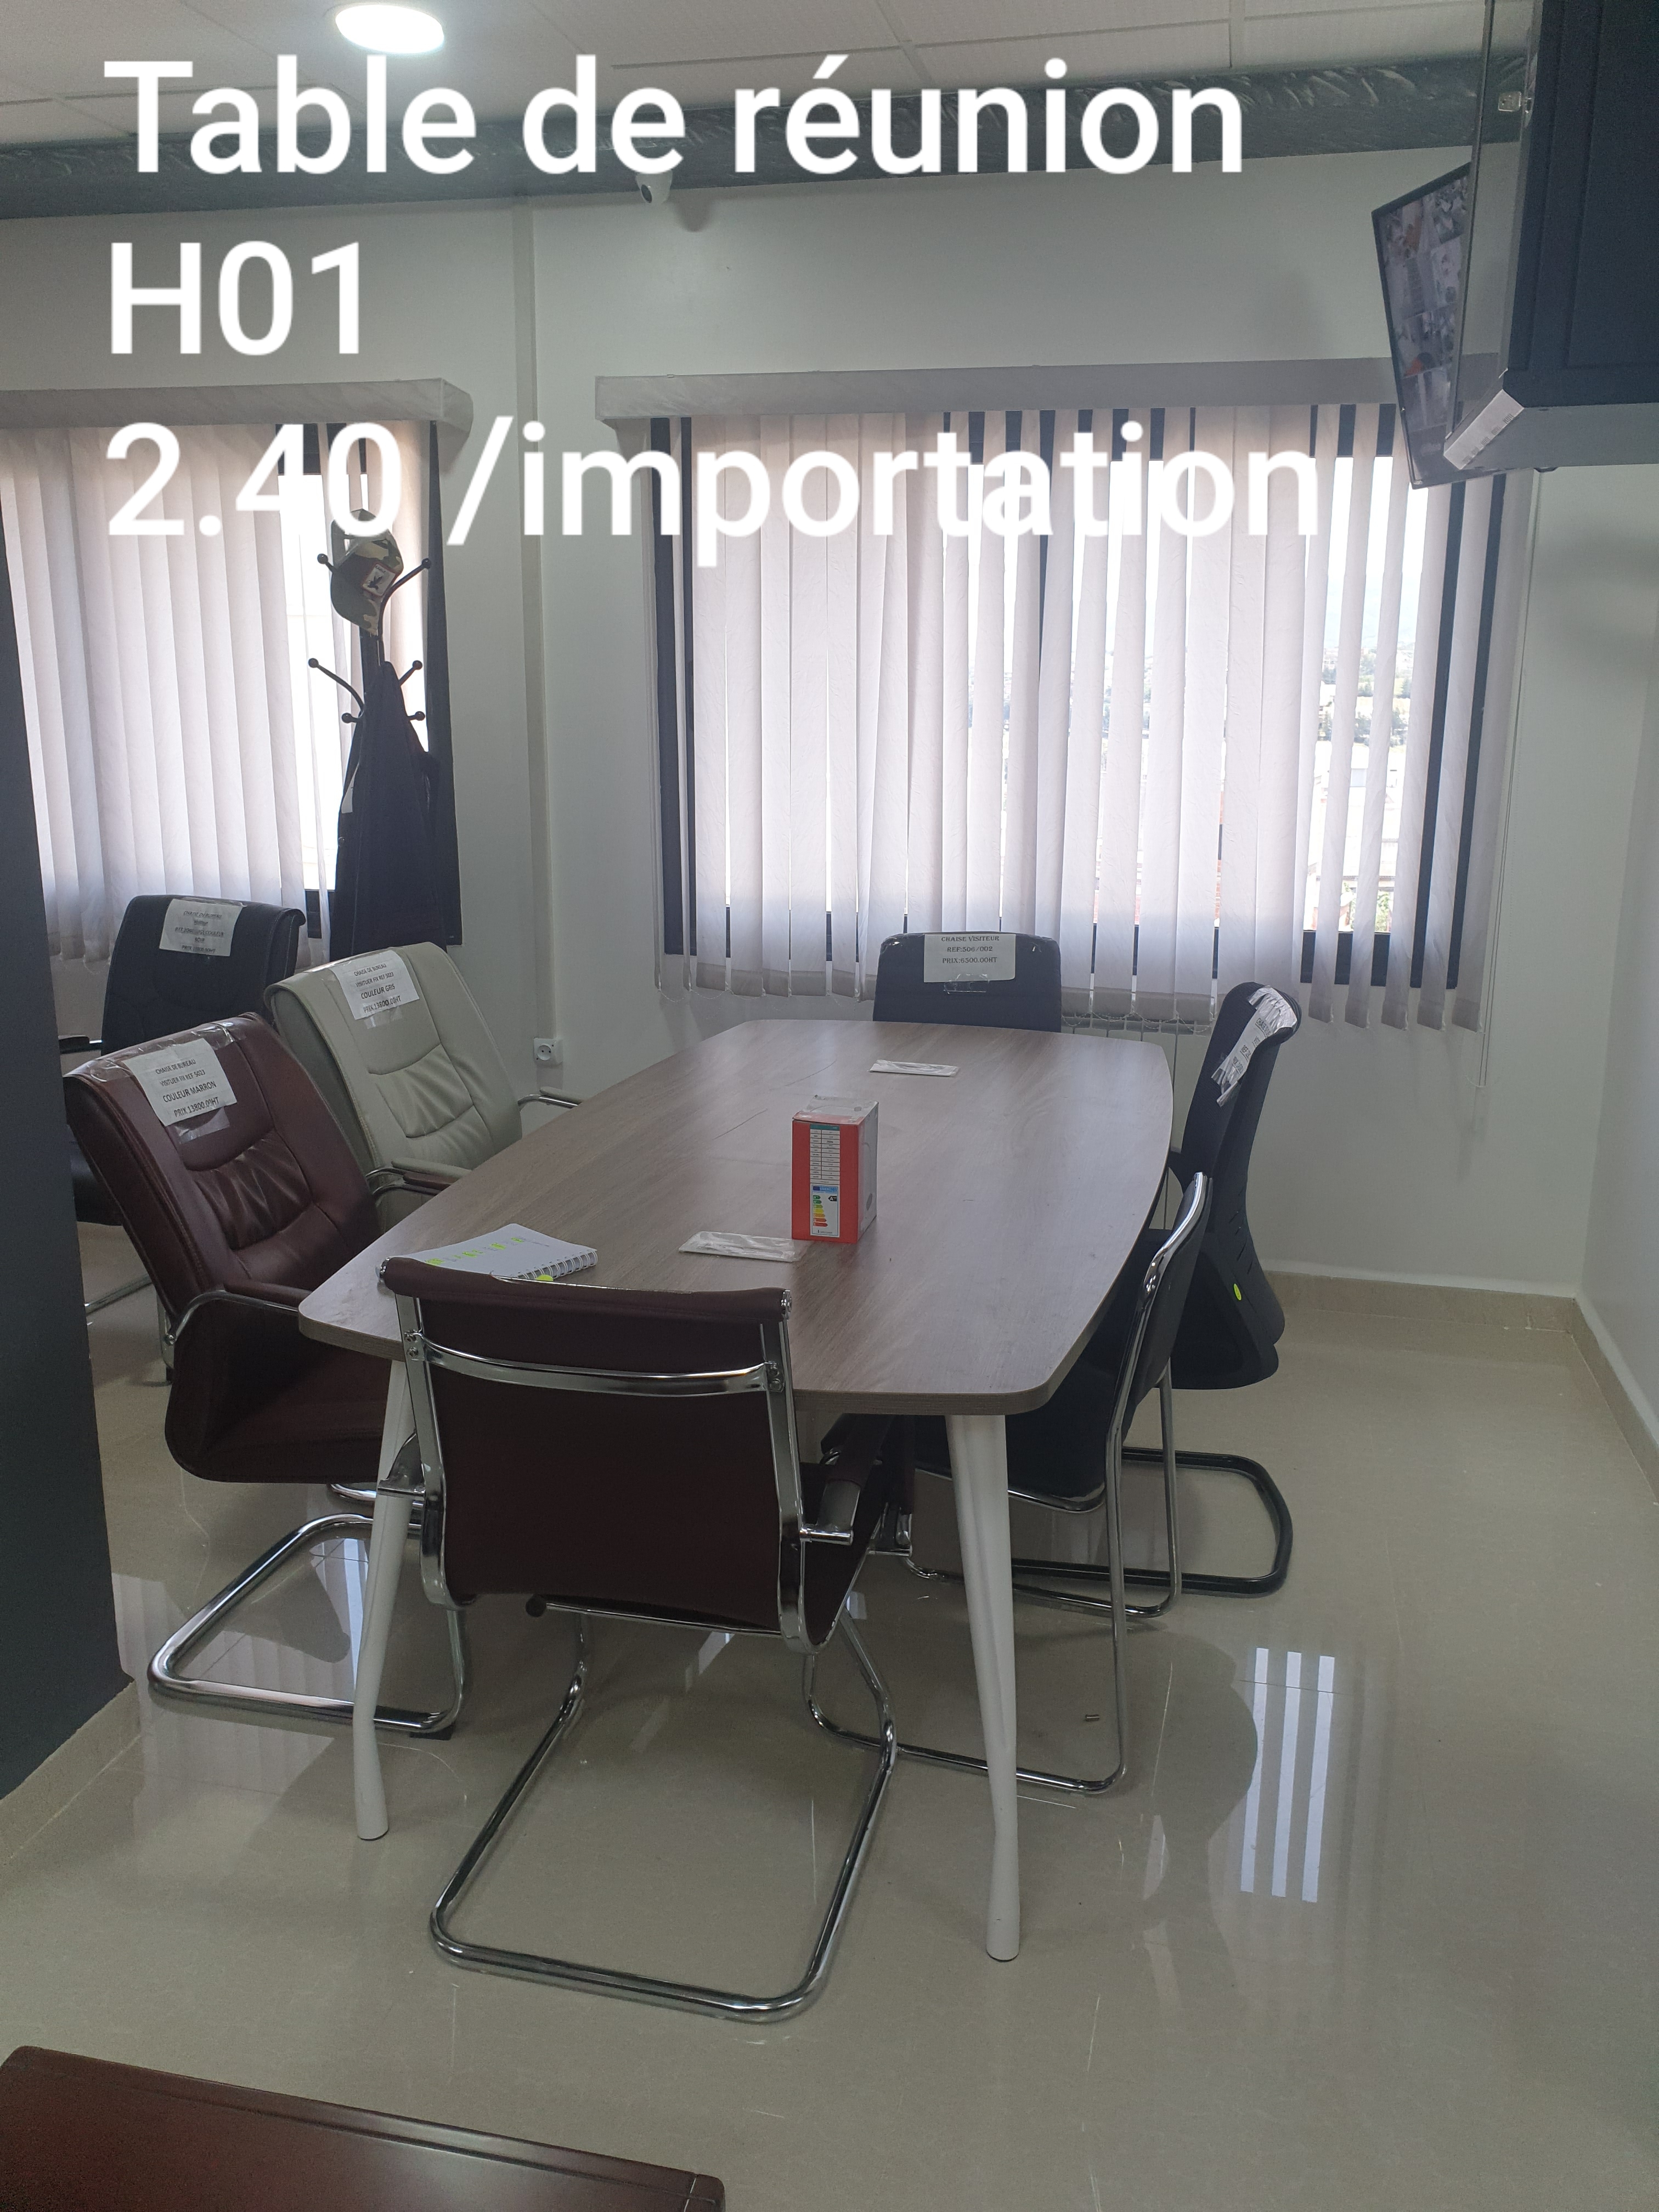 Table de réunion H-01 2.4m importation